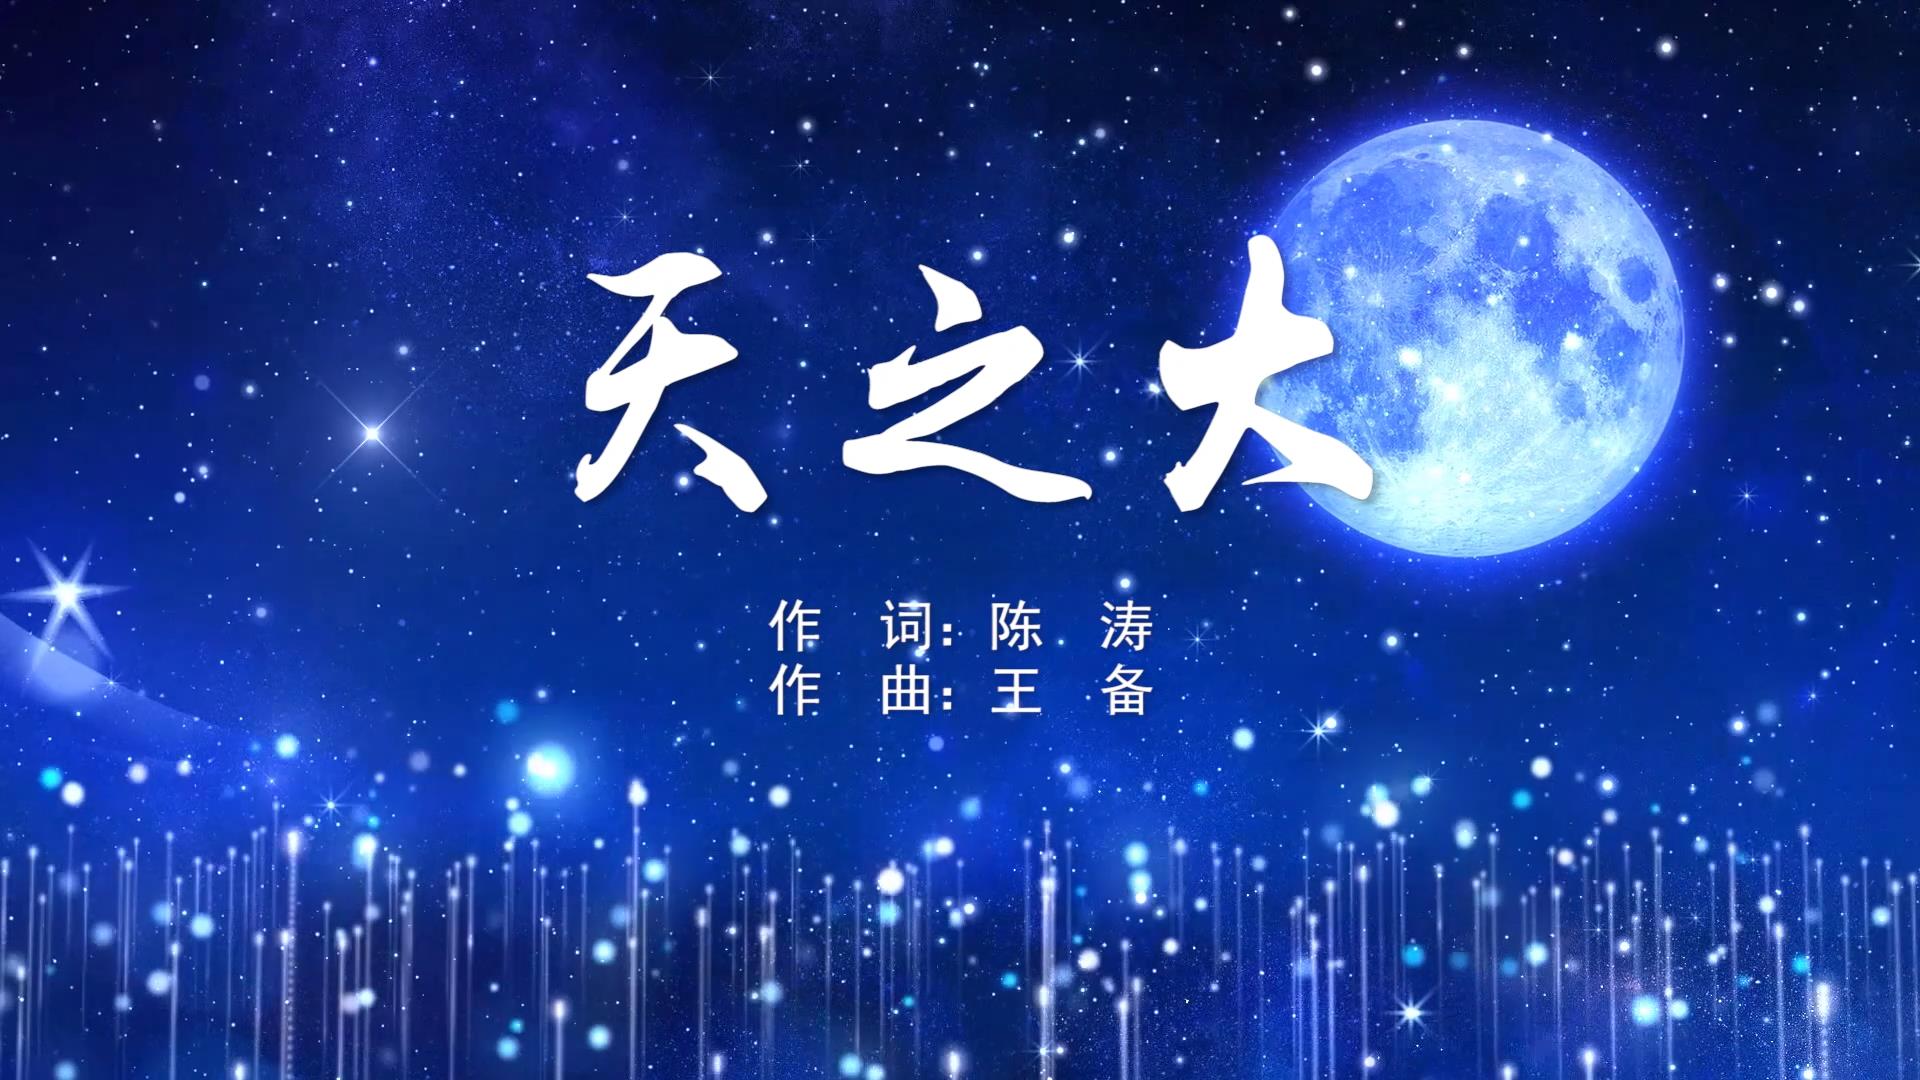 天之大MV字幕配乐伴奏舞台演出LED背景大屏幕视频